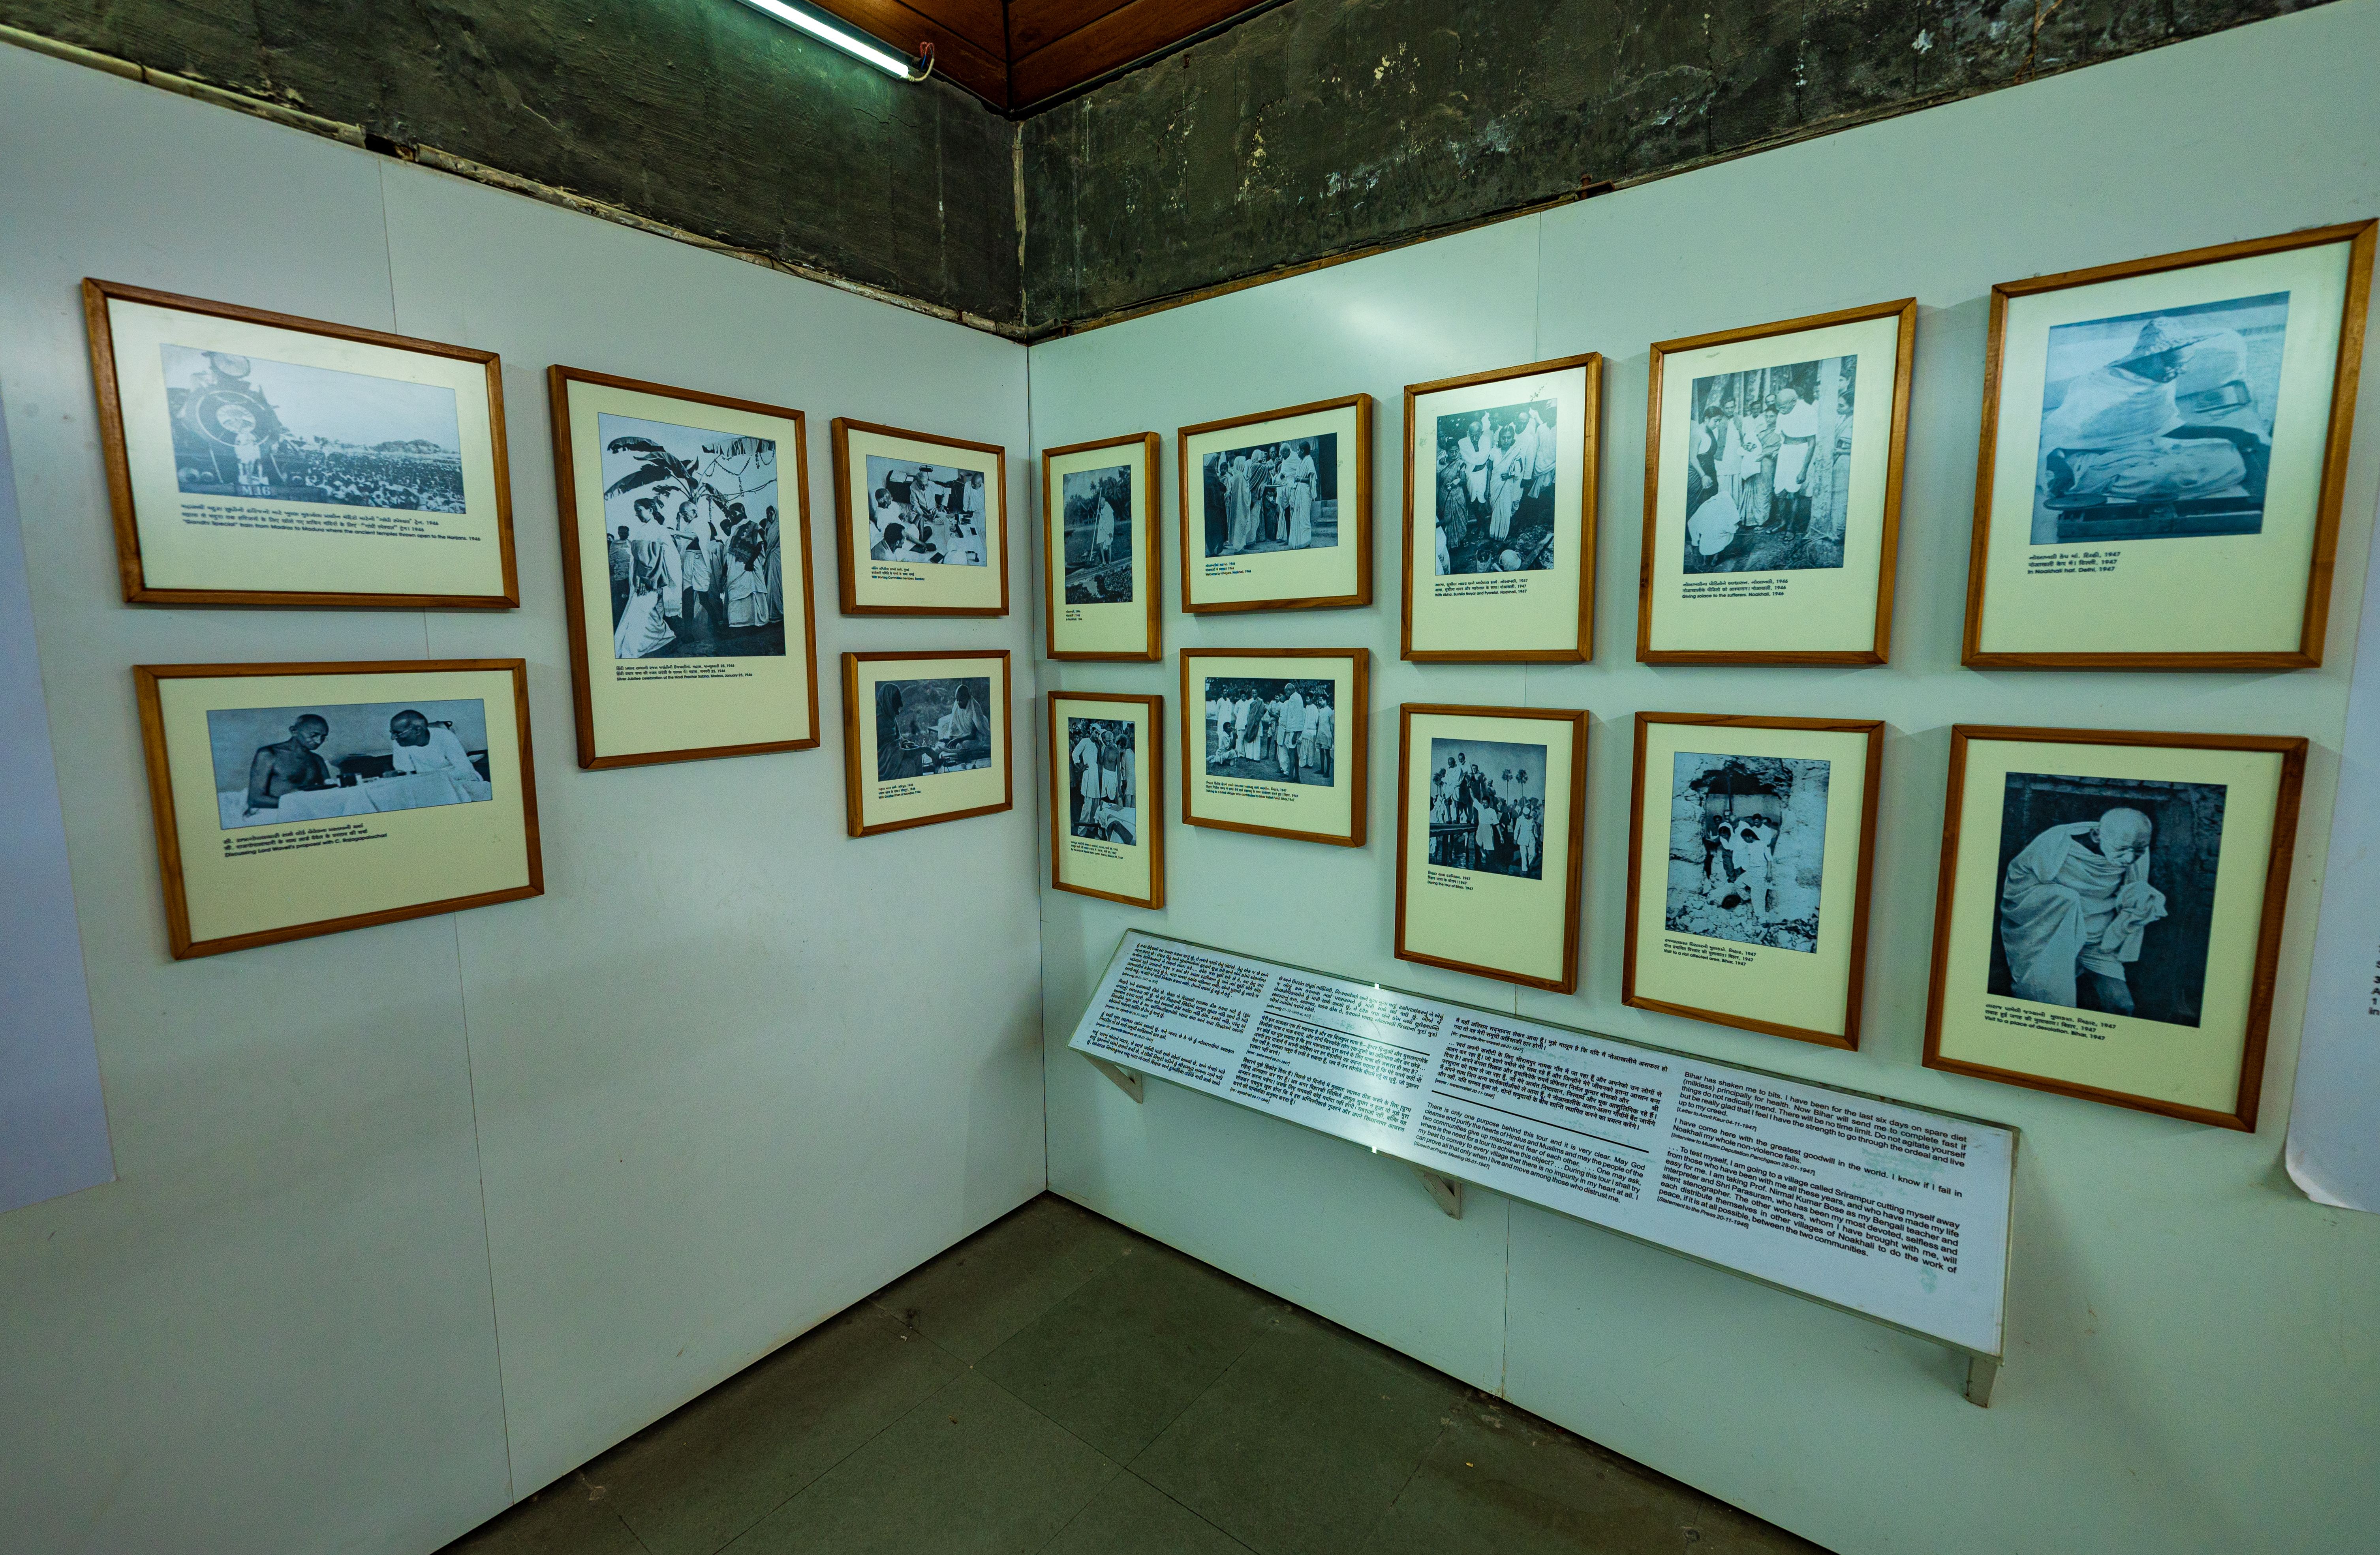 Gandhi in Ahmedabad' Gallery